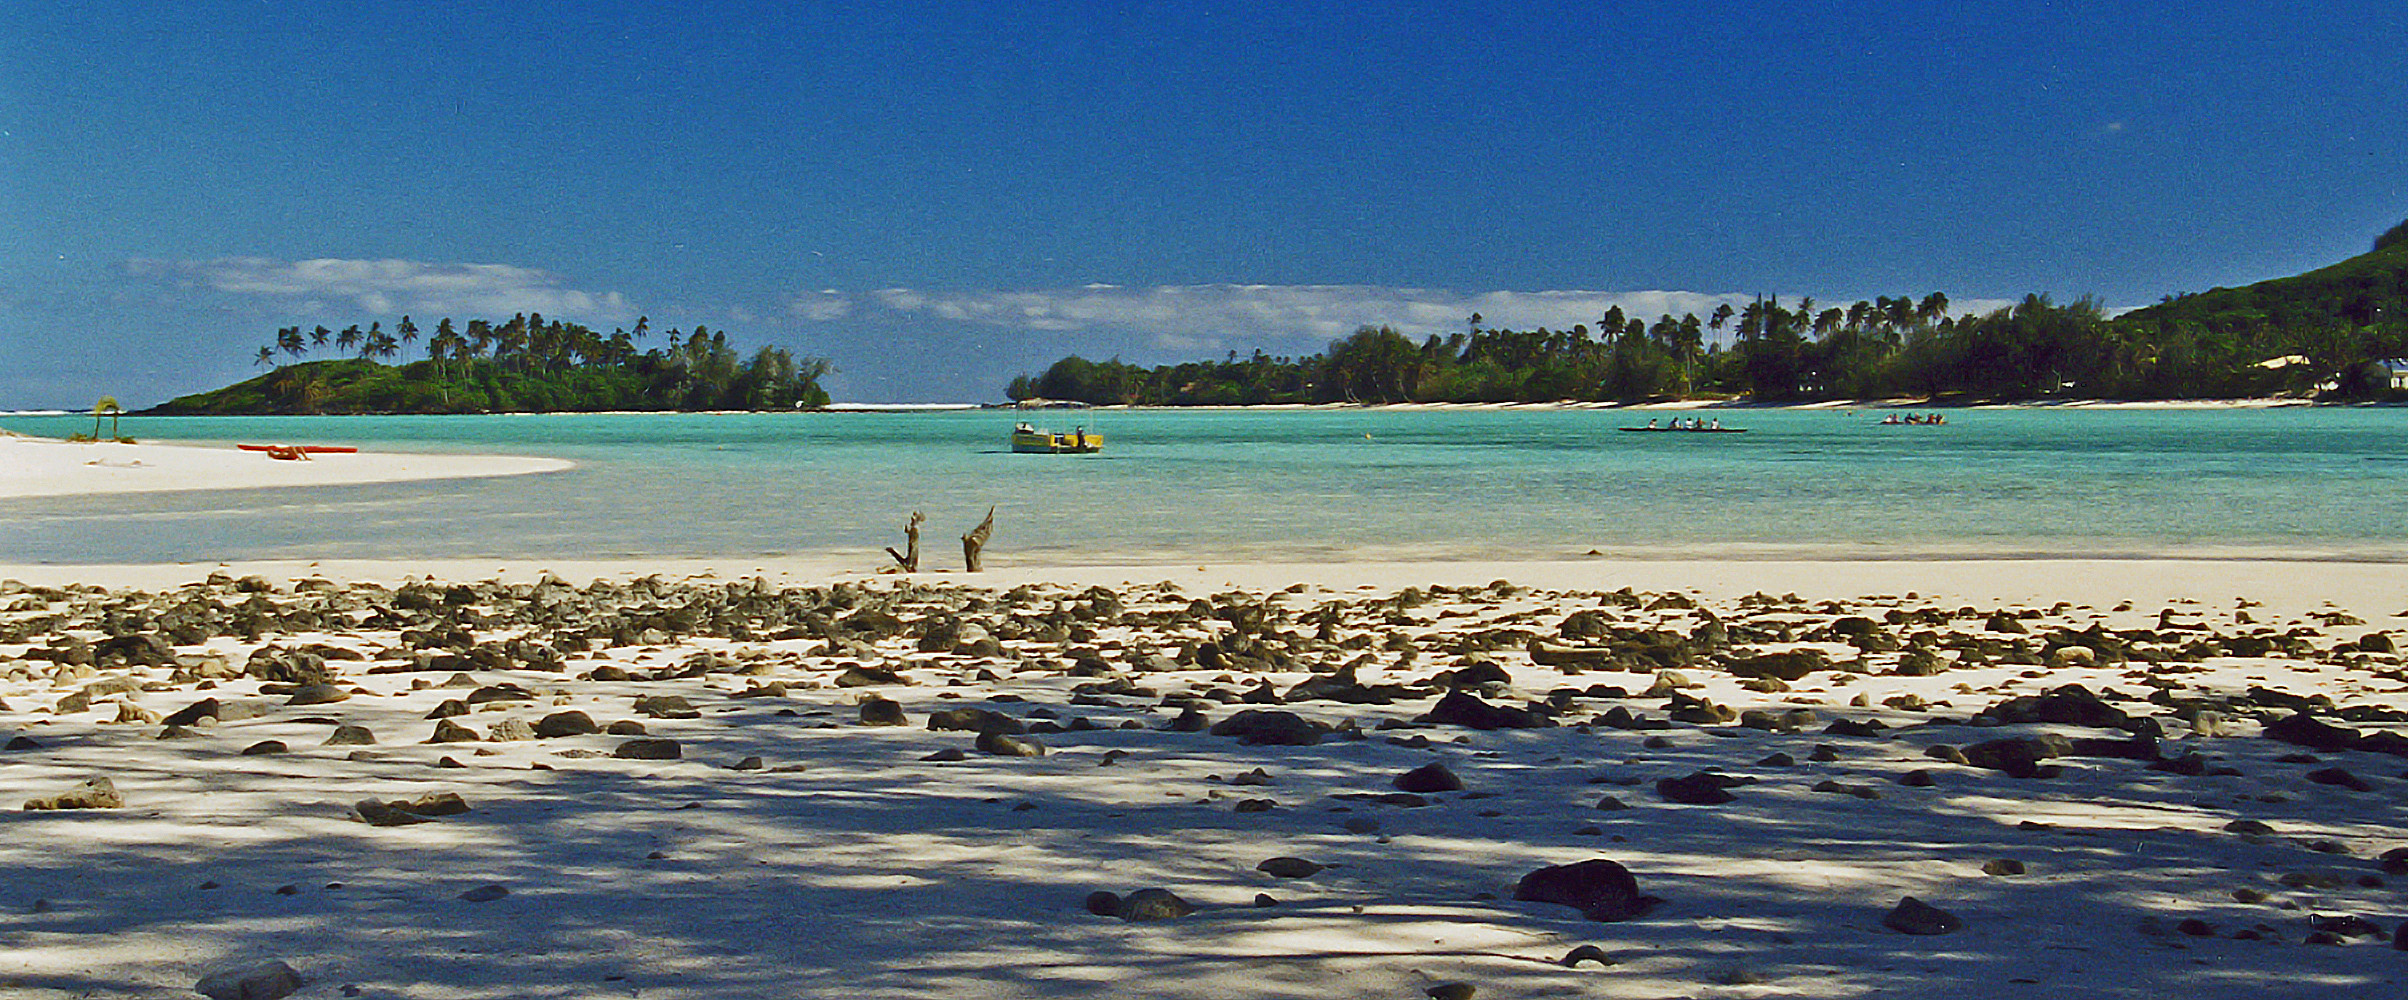 RAROTONGA COOK ISLAND